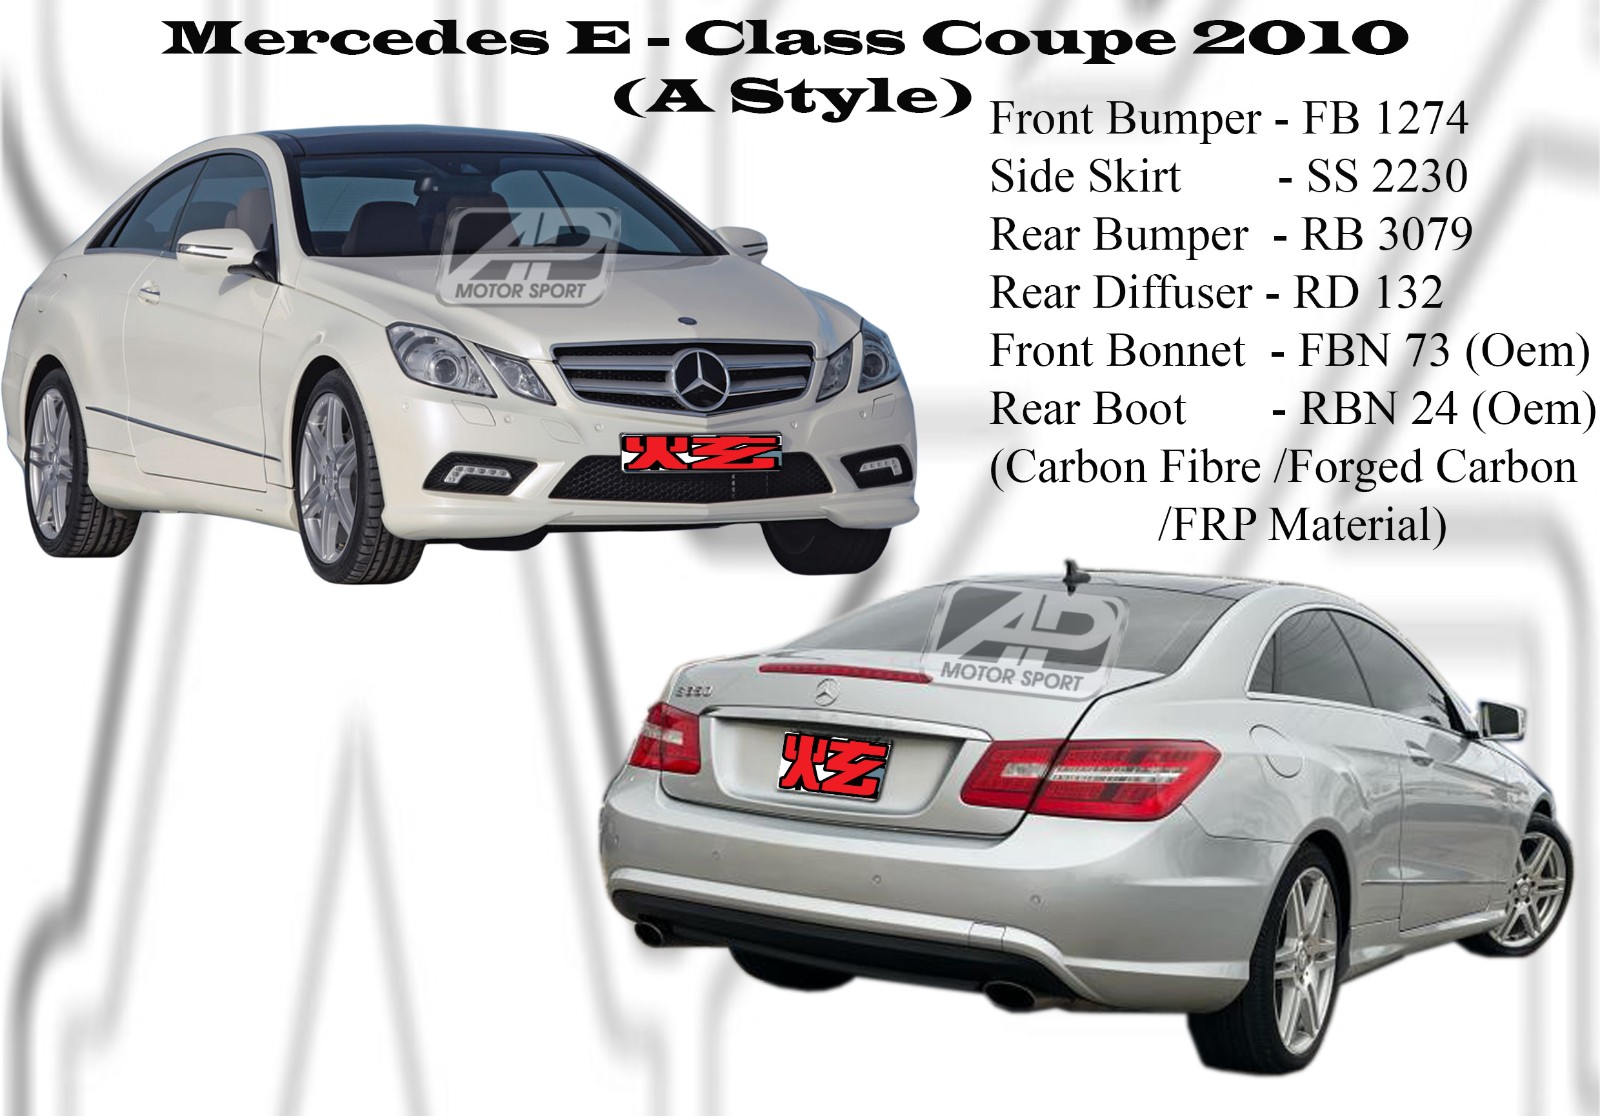 Mercedes E Class Coupe Front Bonnet, Rear Boot (Carbon Fibre